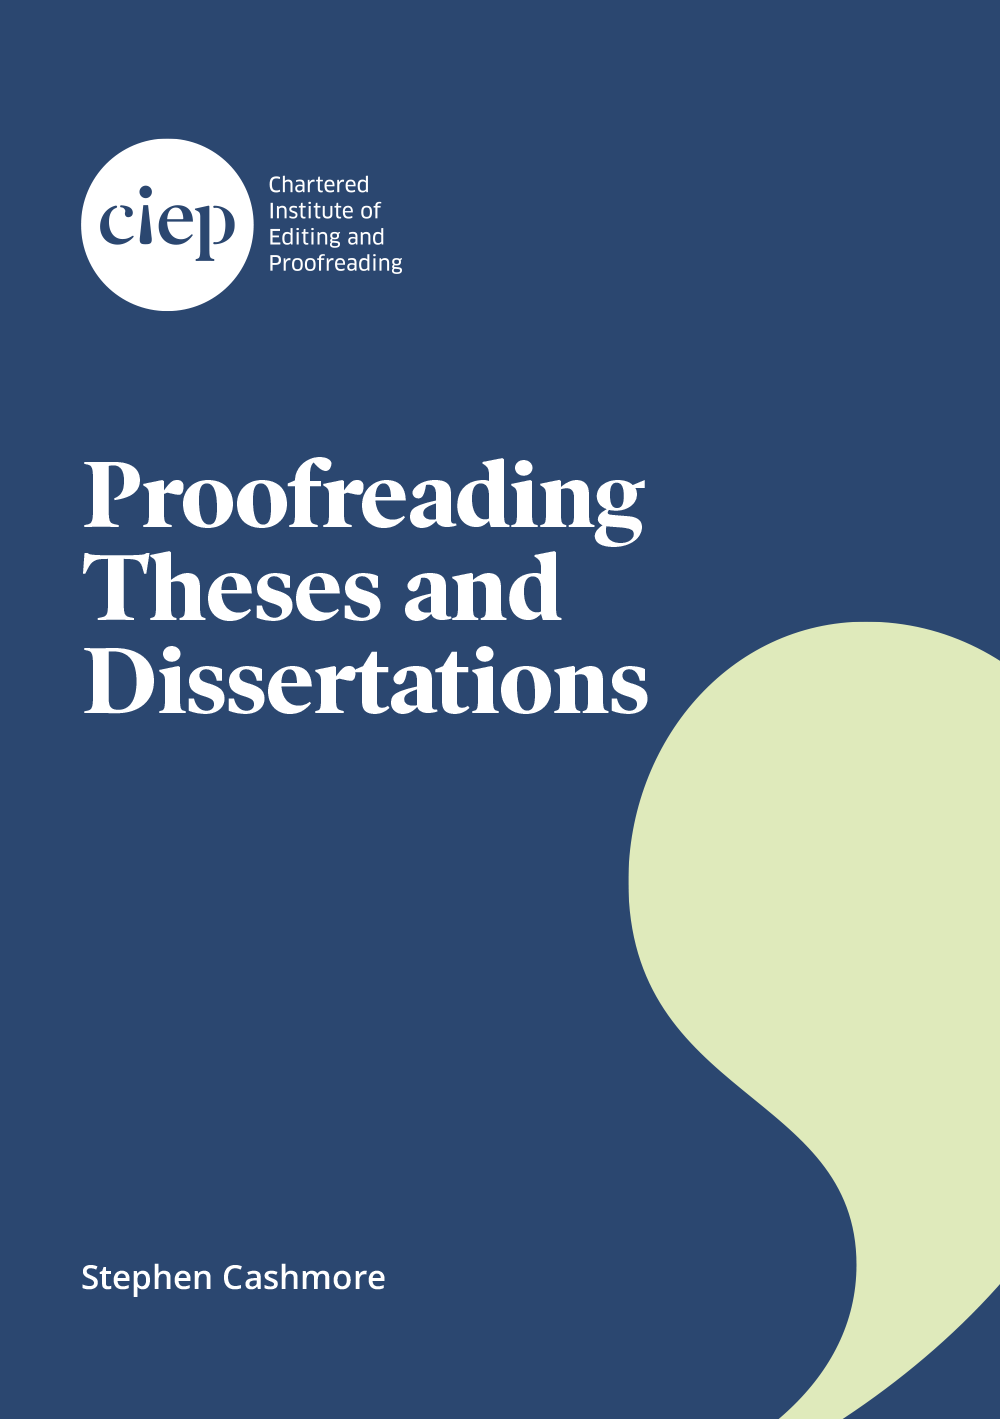 Dissertation plagiarism by dora d. clarke-pine